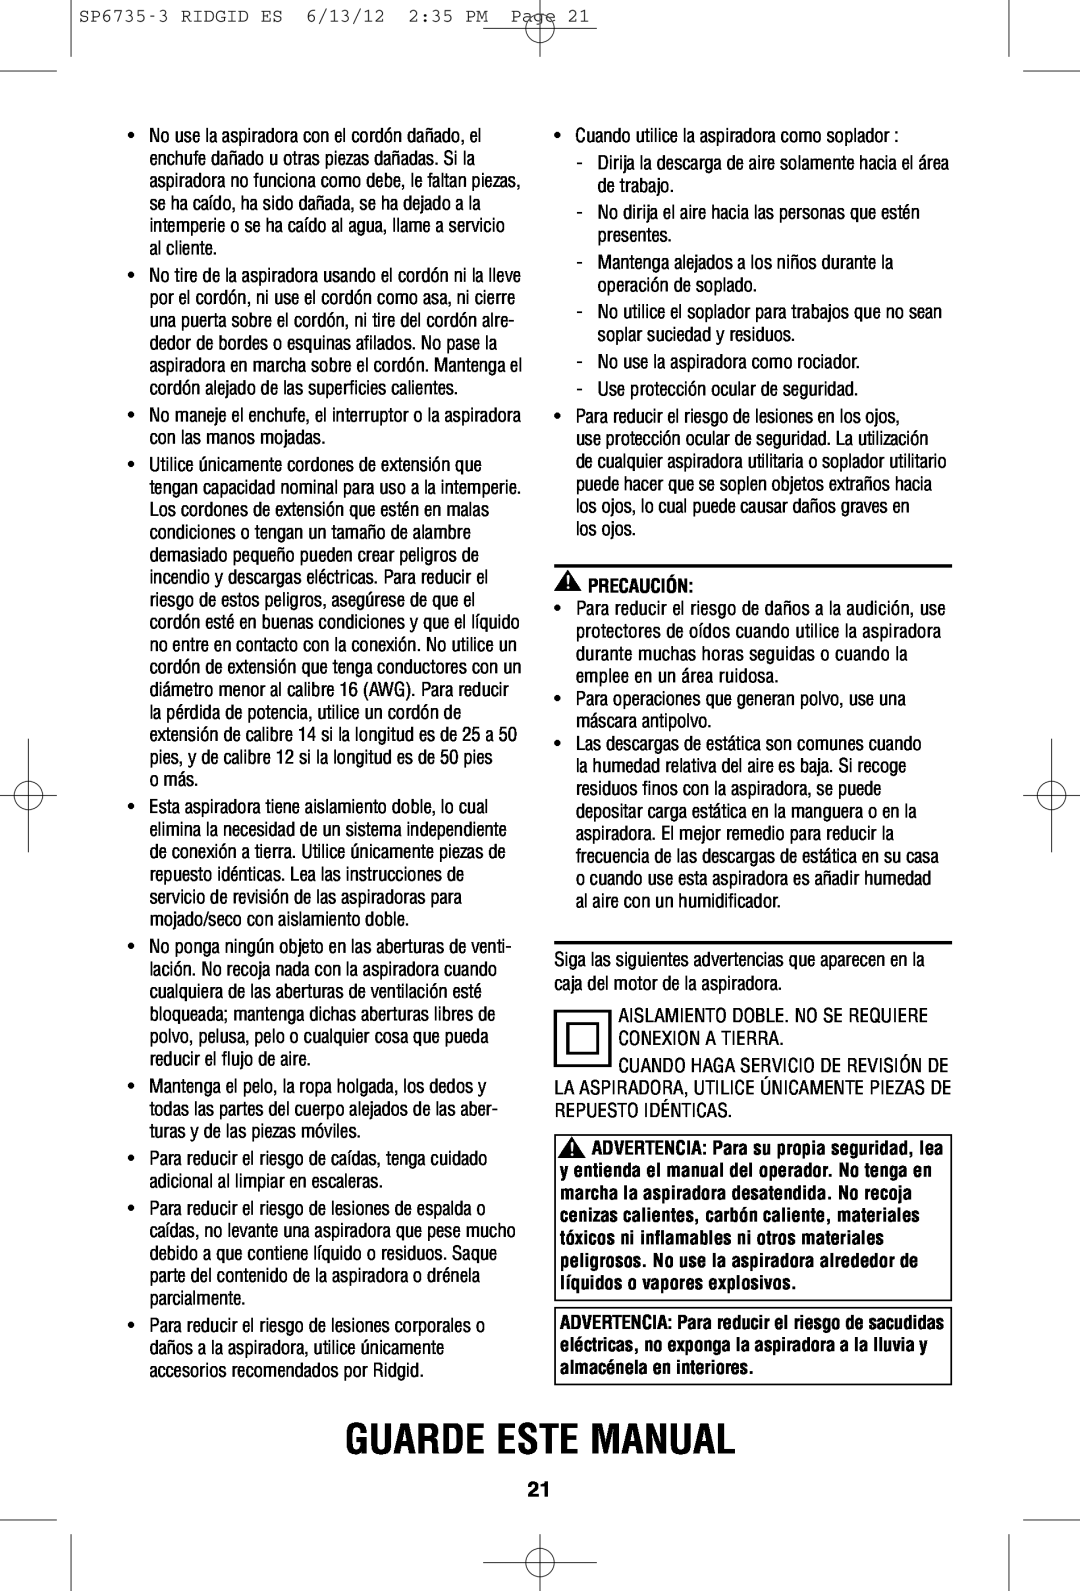 RIDGID WD14500 owner manual Guarde Este Manual, Precaución 